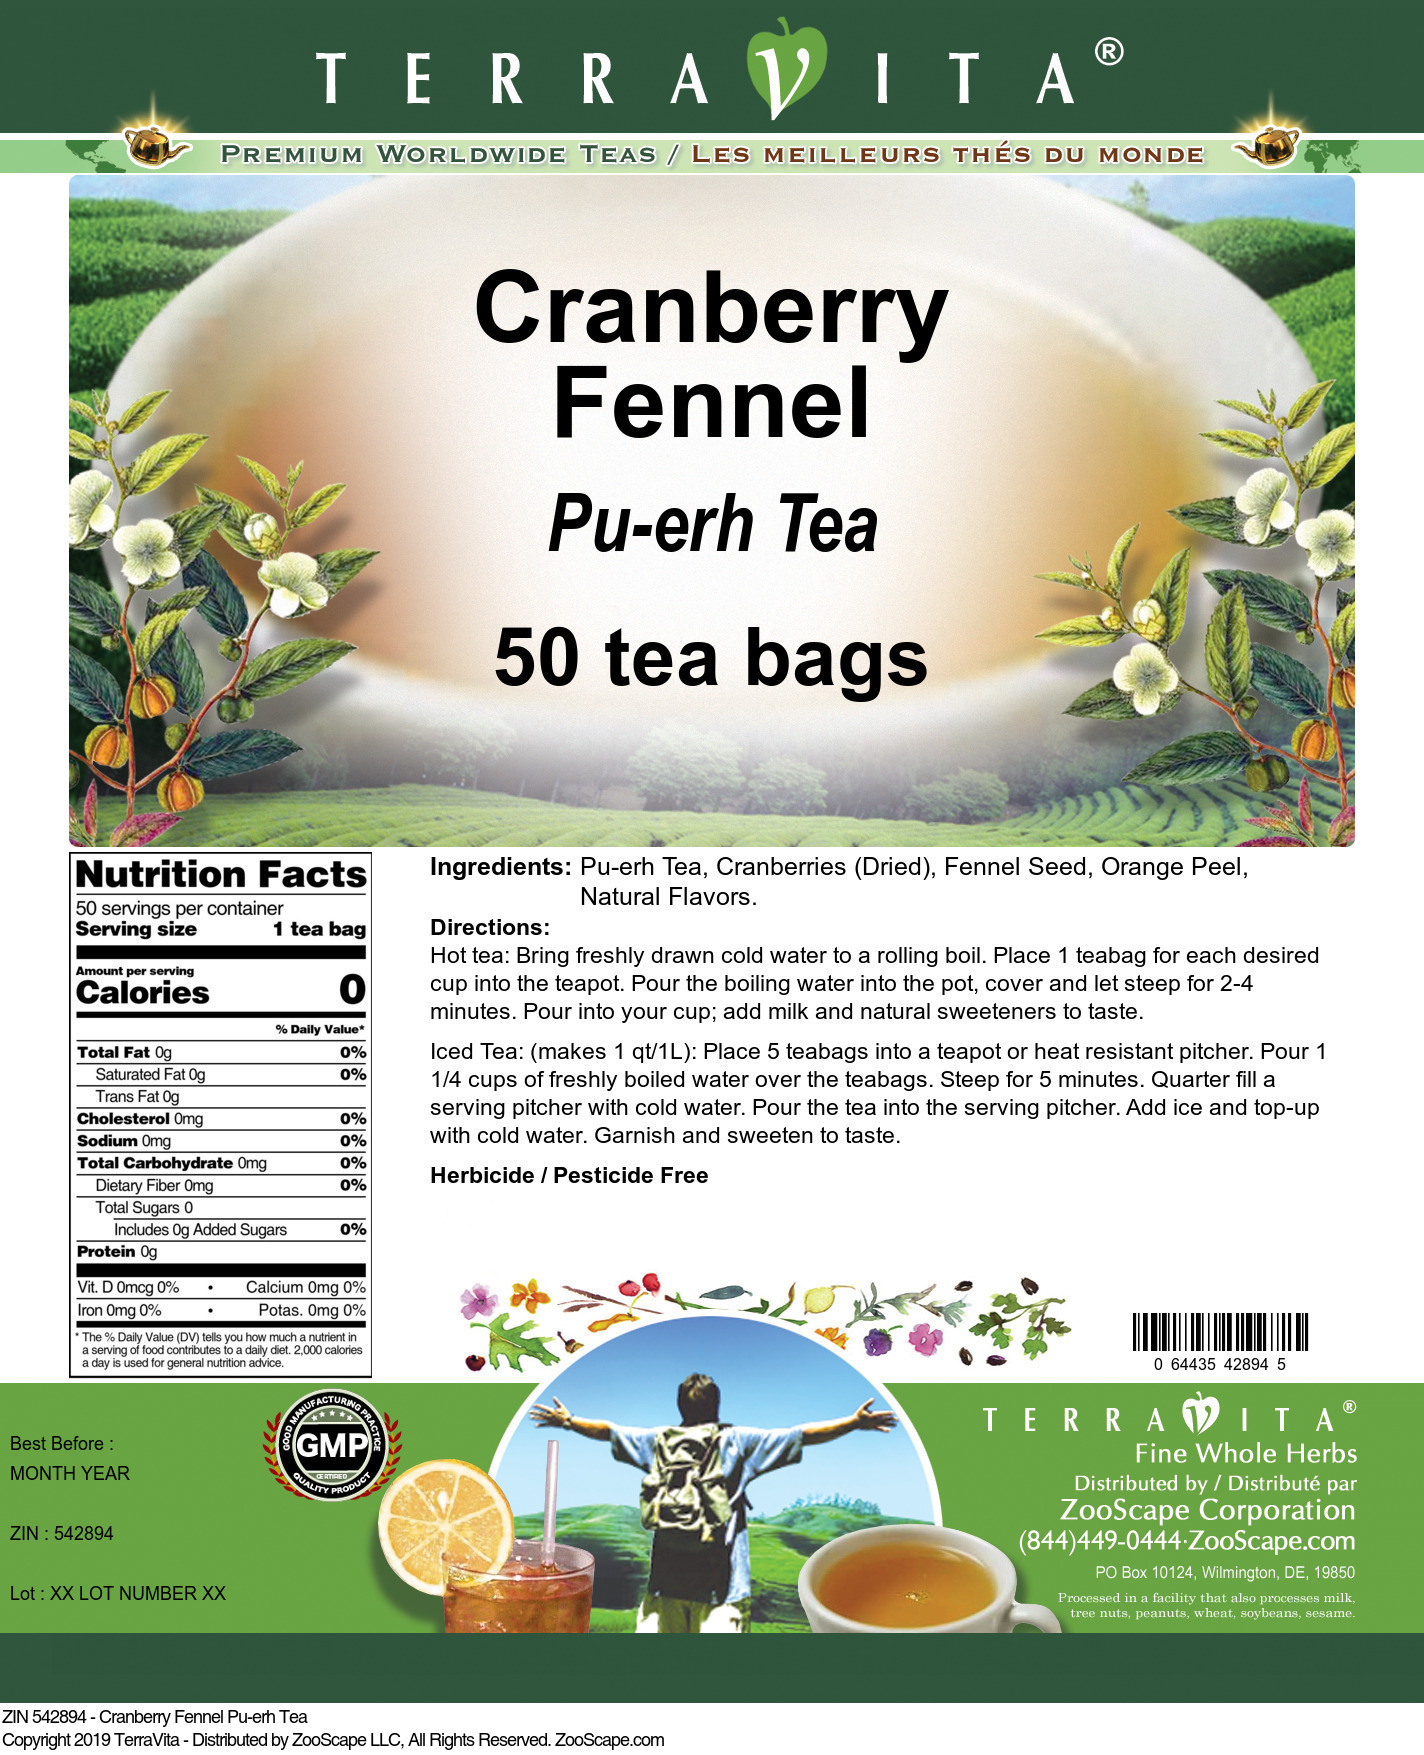 Cranberry Fennel Pu-erh Tea - Label